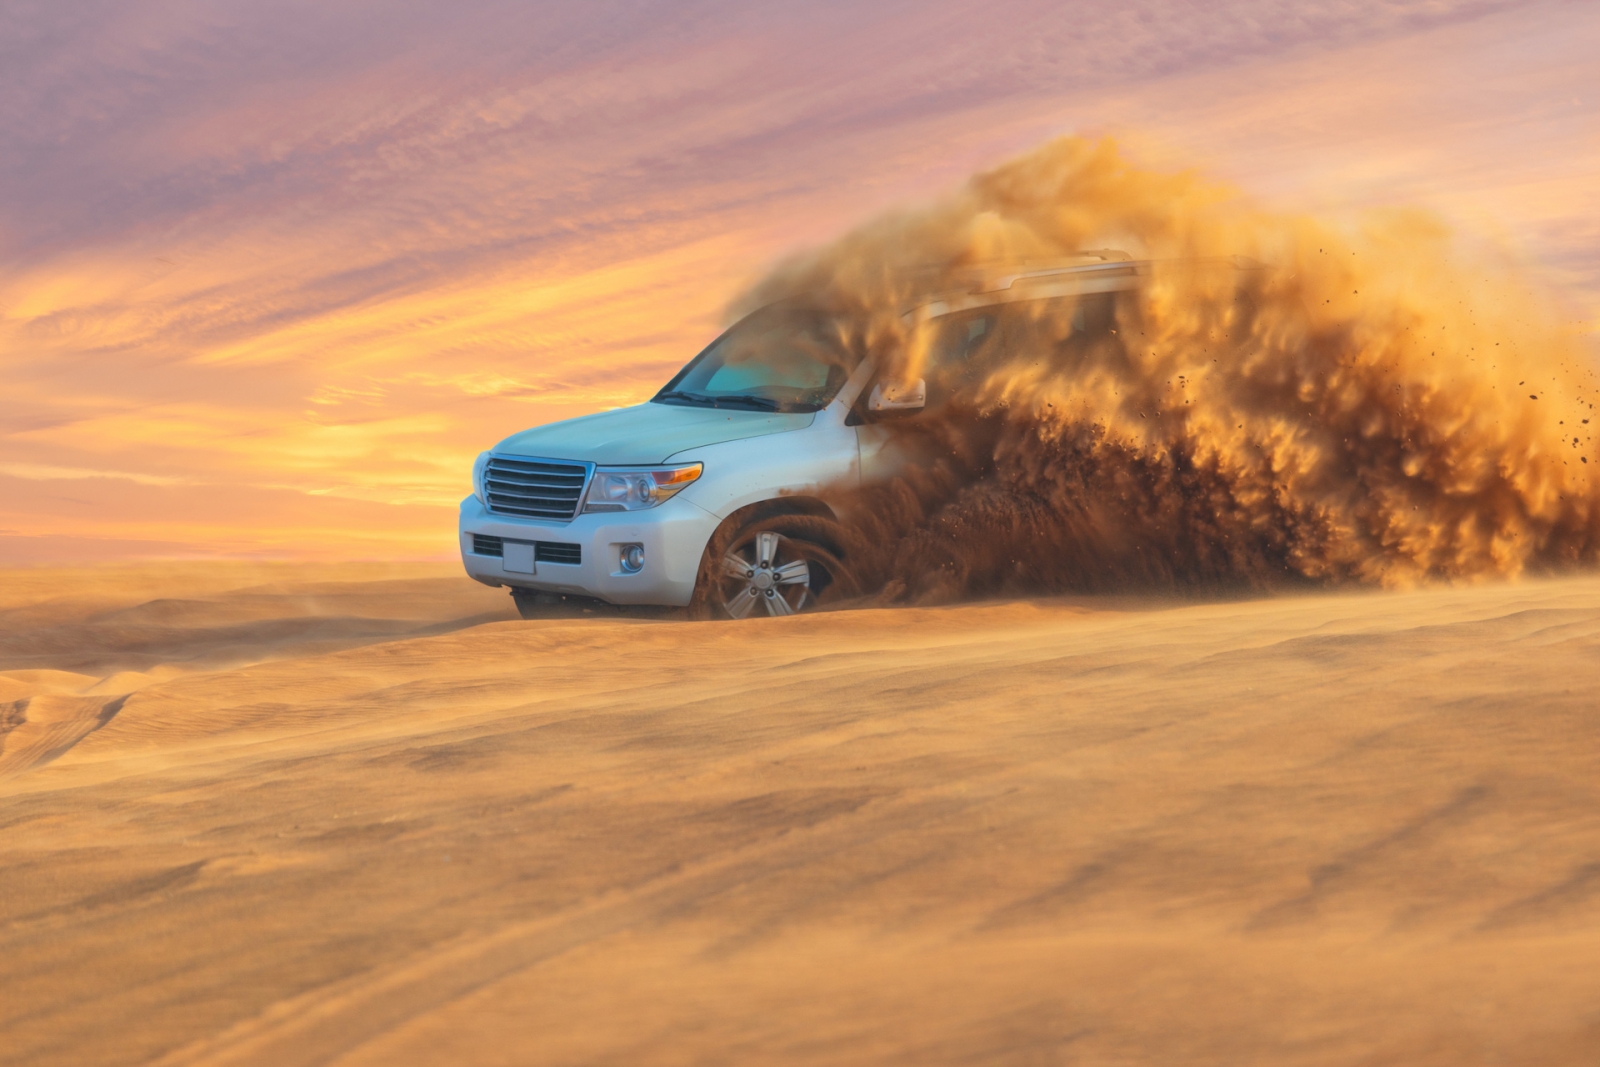 Avventura fuoristrada con SUV nel deserto arabo al tramonto.